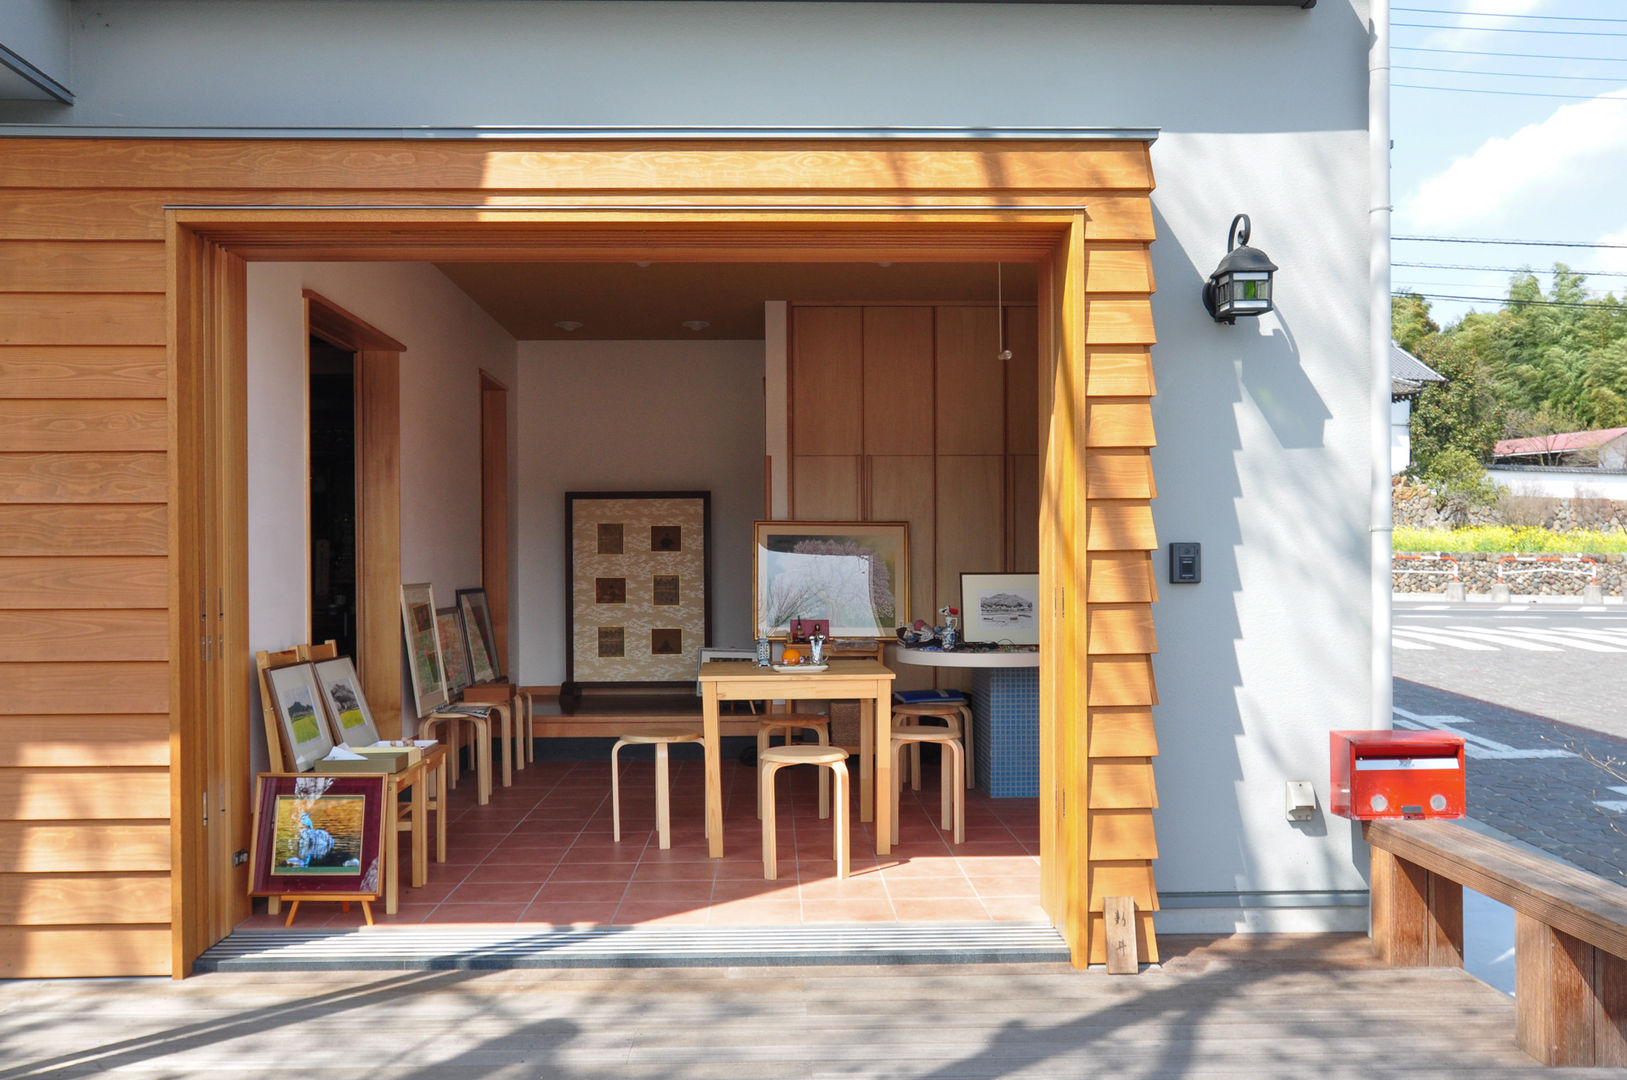 【土間玄関とデッキを使ったカフェスペースのある家】, （株）独楽蔵 KOMAGURA （株）独楽蔵 KOMAGURA Eclectic style balcony, veranda & terrace